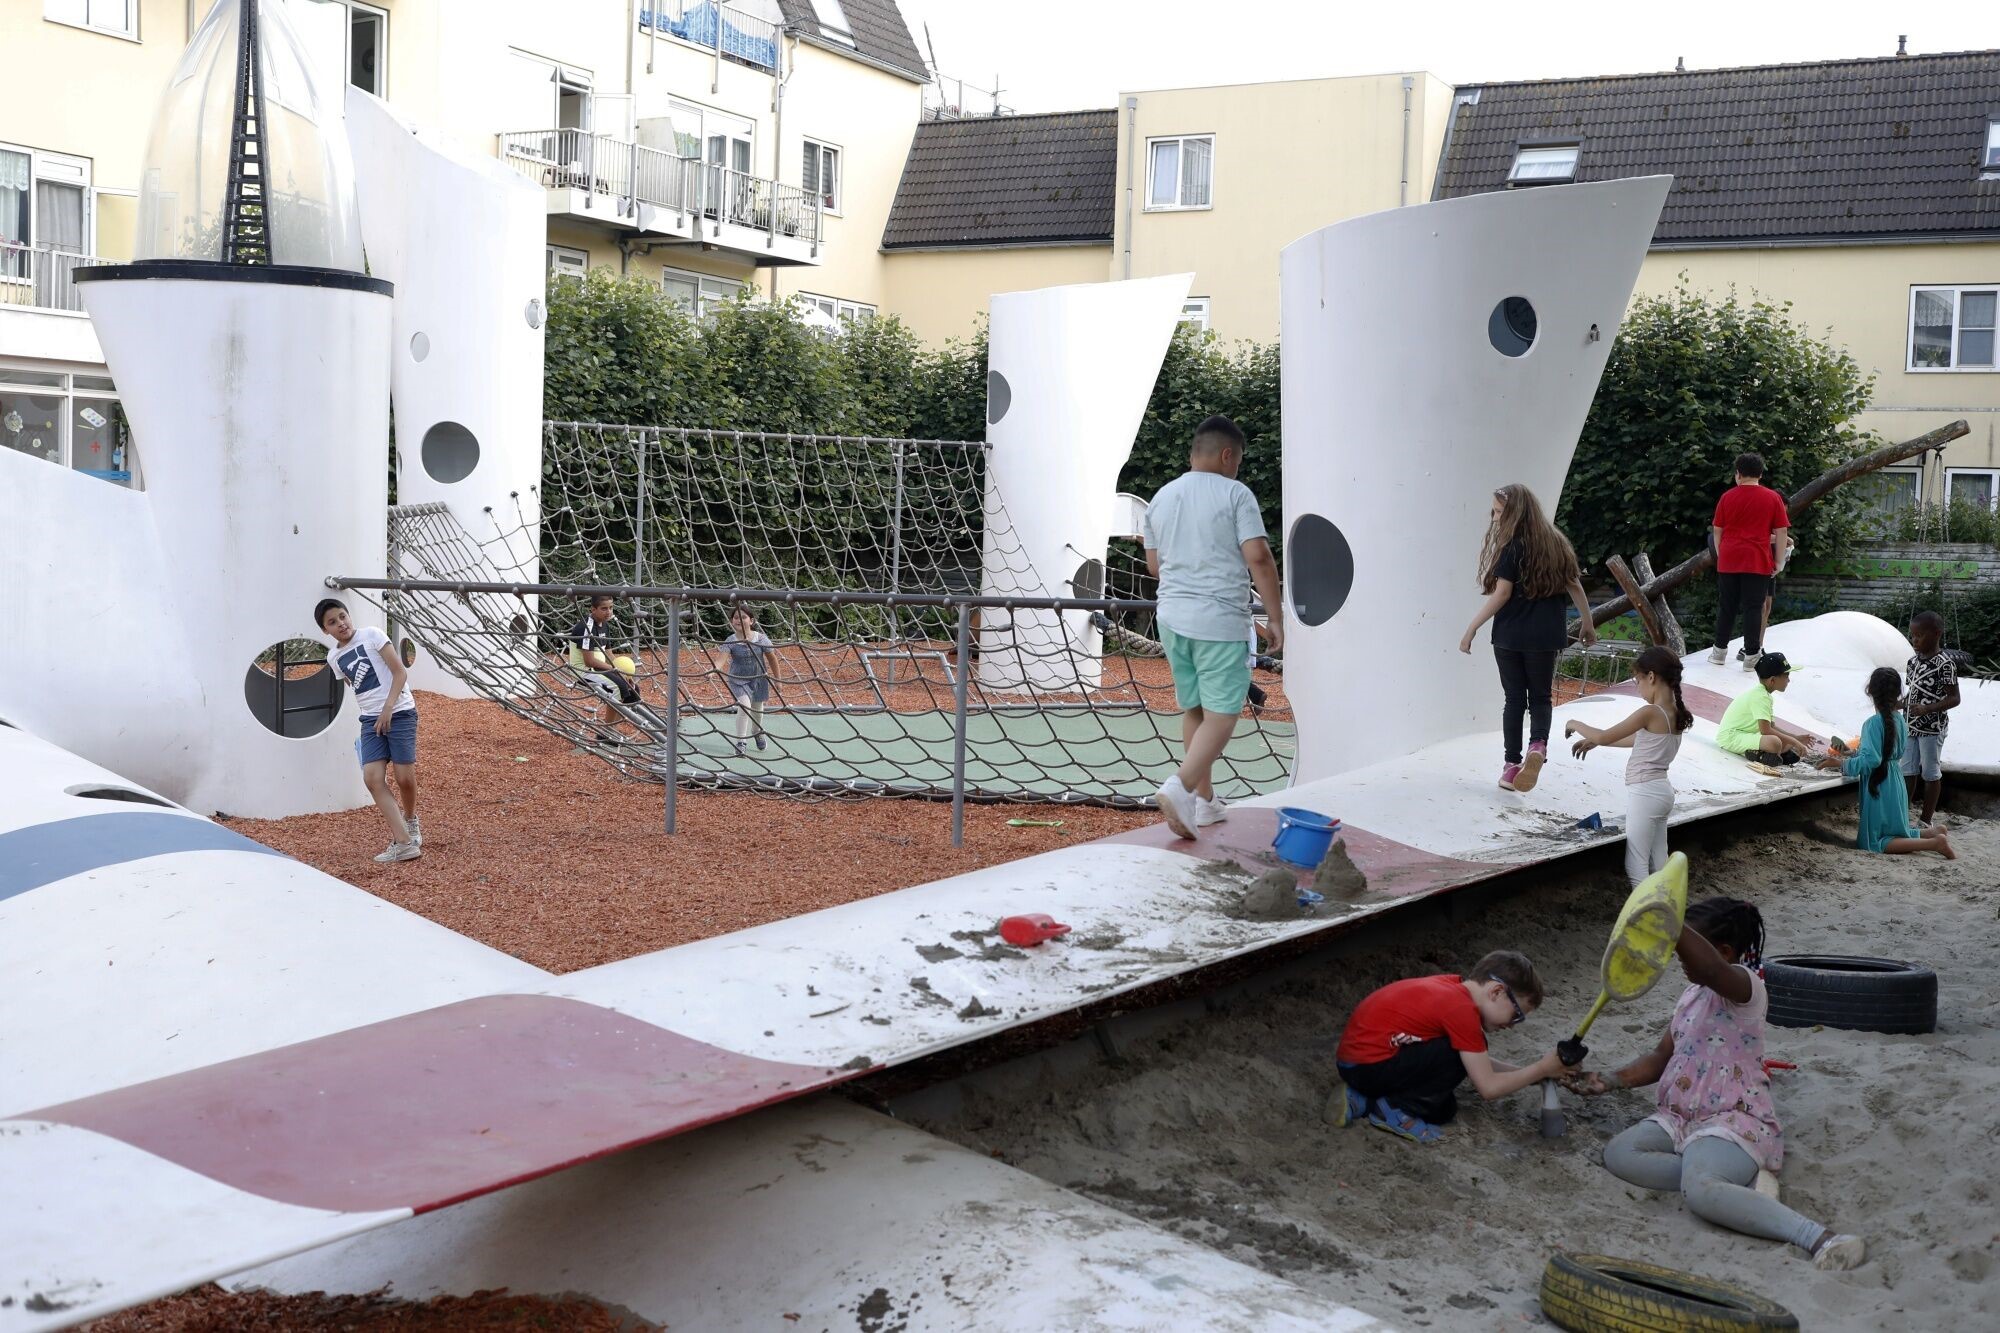 ملعب روضة أطفال مبني من شفرات توربينات الرياح الدوارة بمدينة روتردام الهولندية